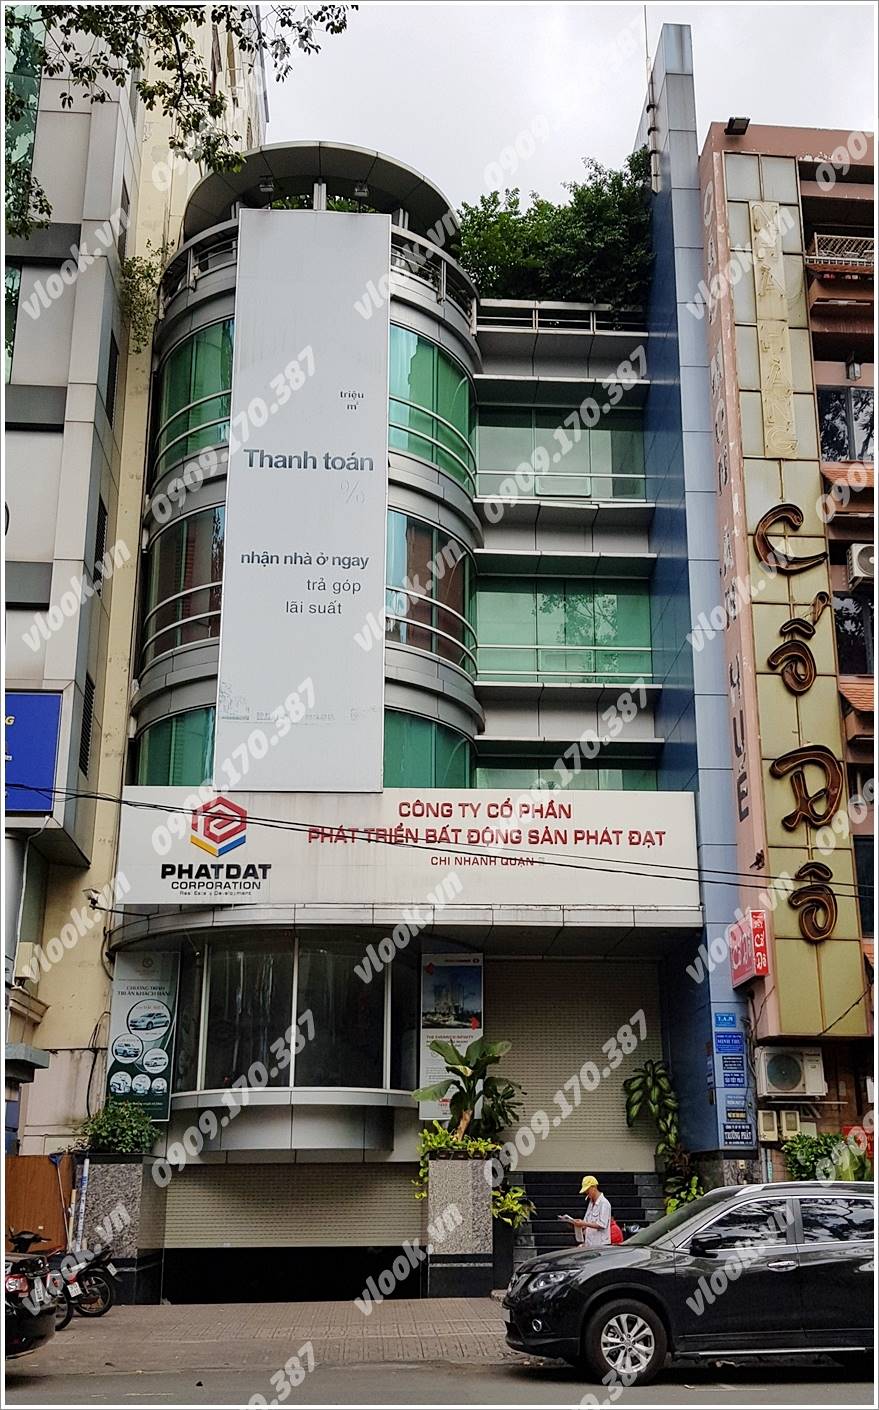 Cao ốc cho thuê văn phòng Phát Đạt Building, An Dương Vương, Quận 5, TPHCM - vlook.vn